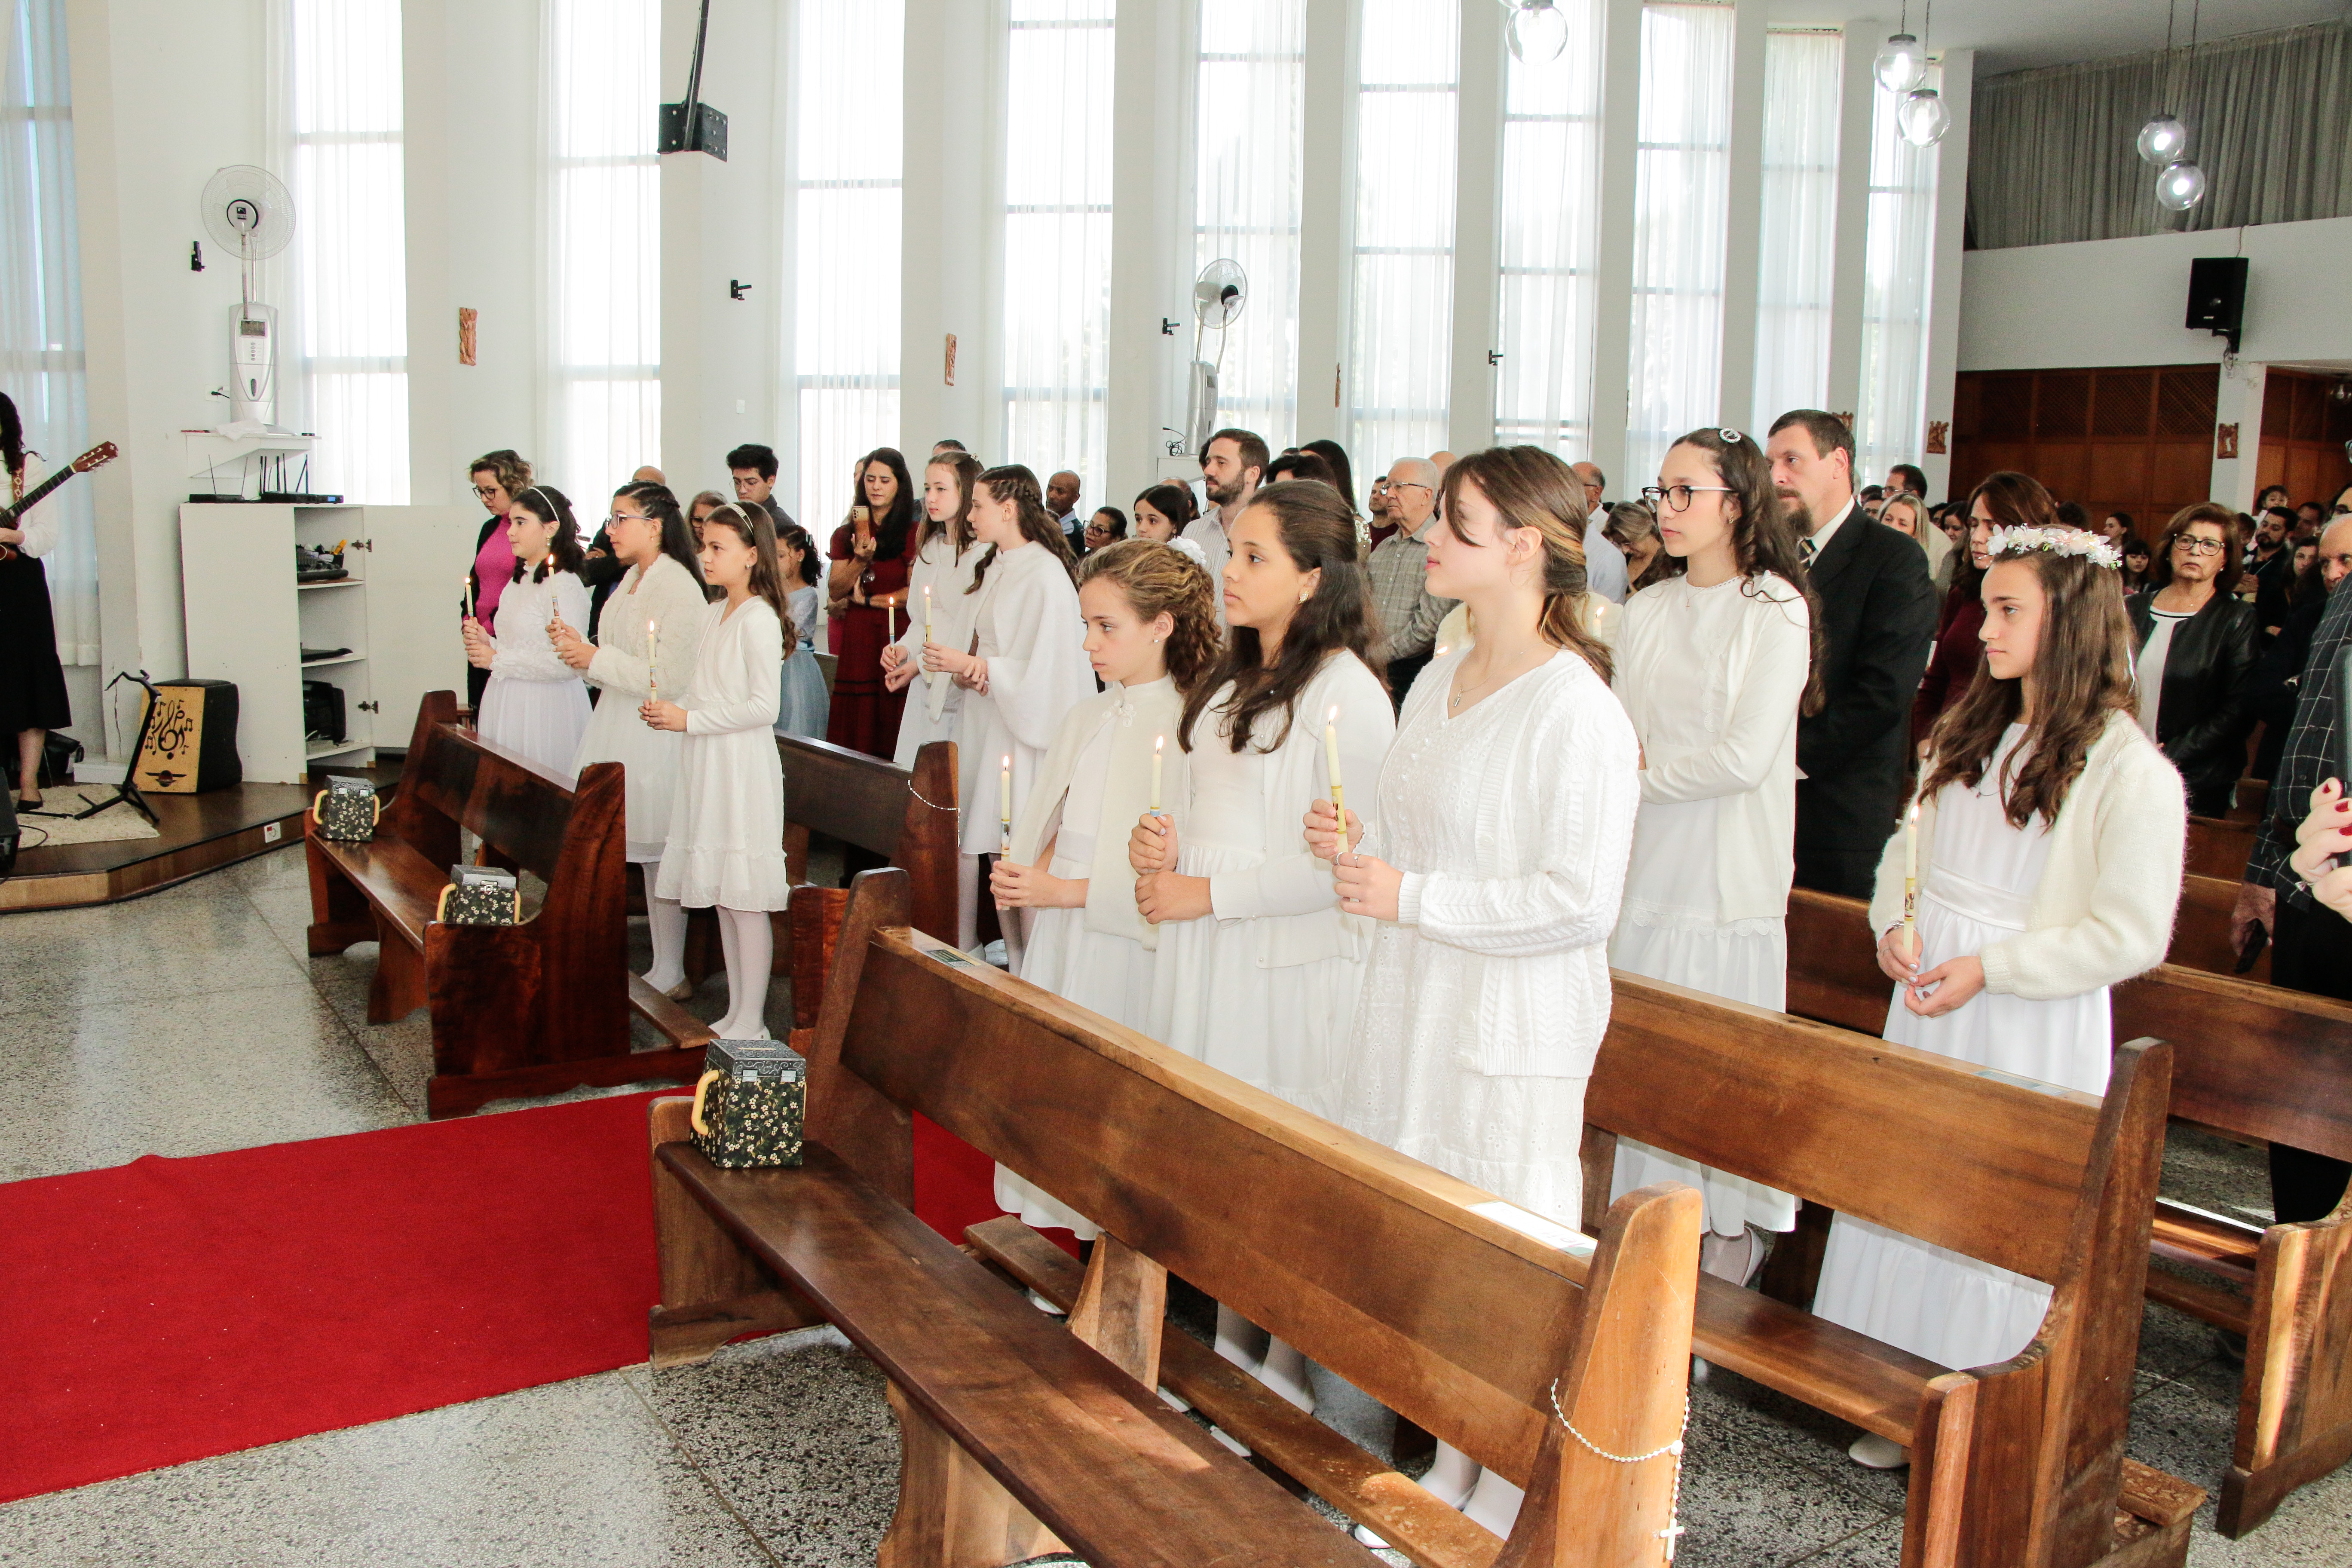  1ª Eucaristia das alunas da Unidade Mananciais